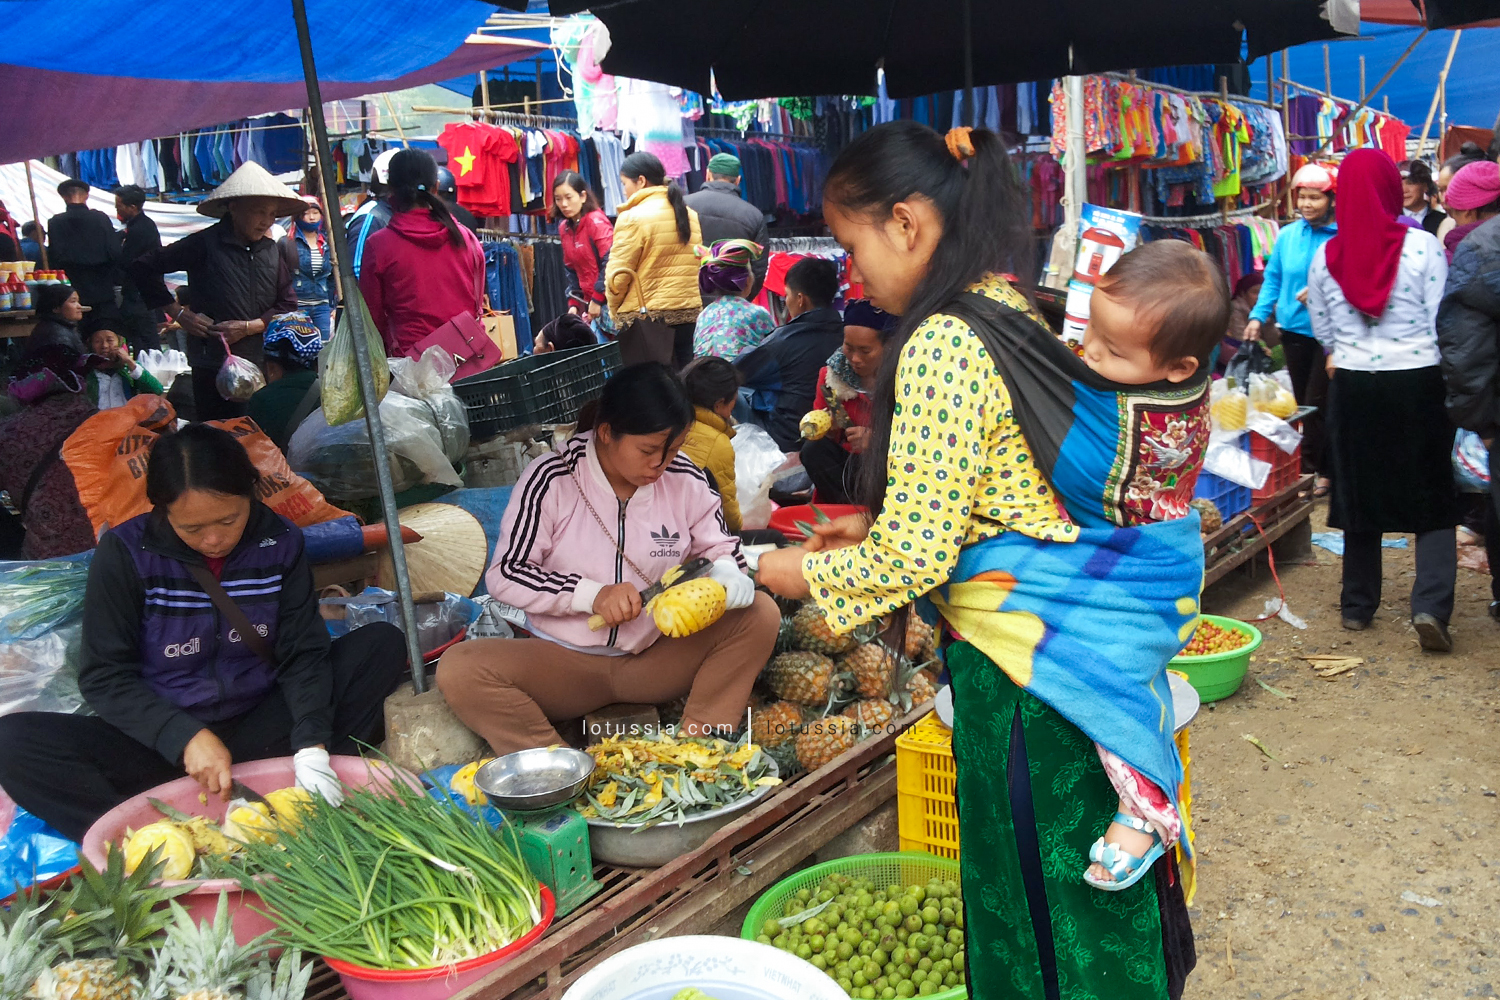 ha giang market vietnam